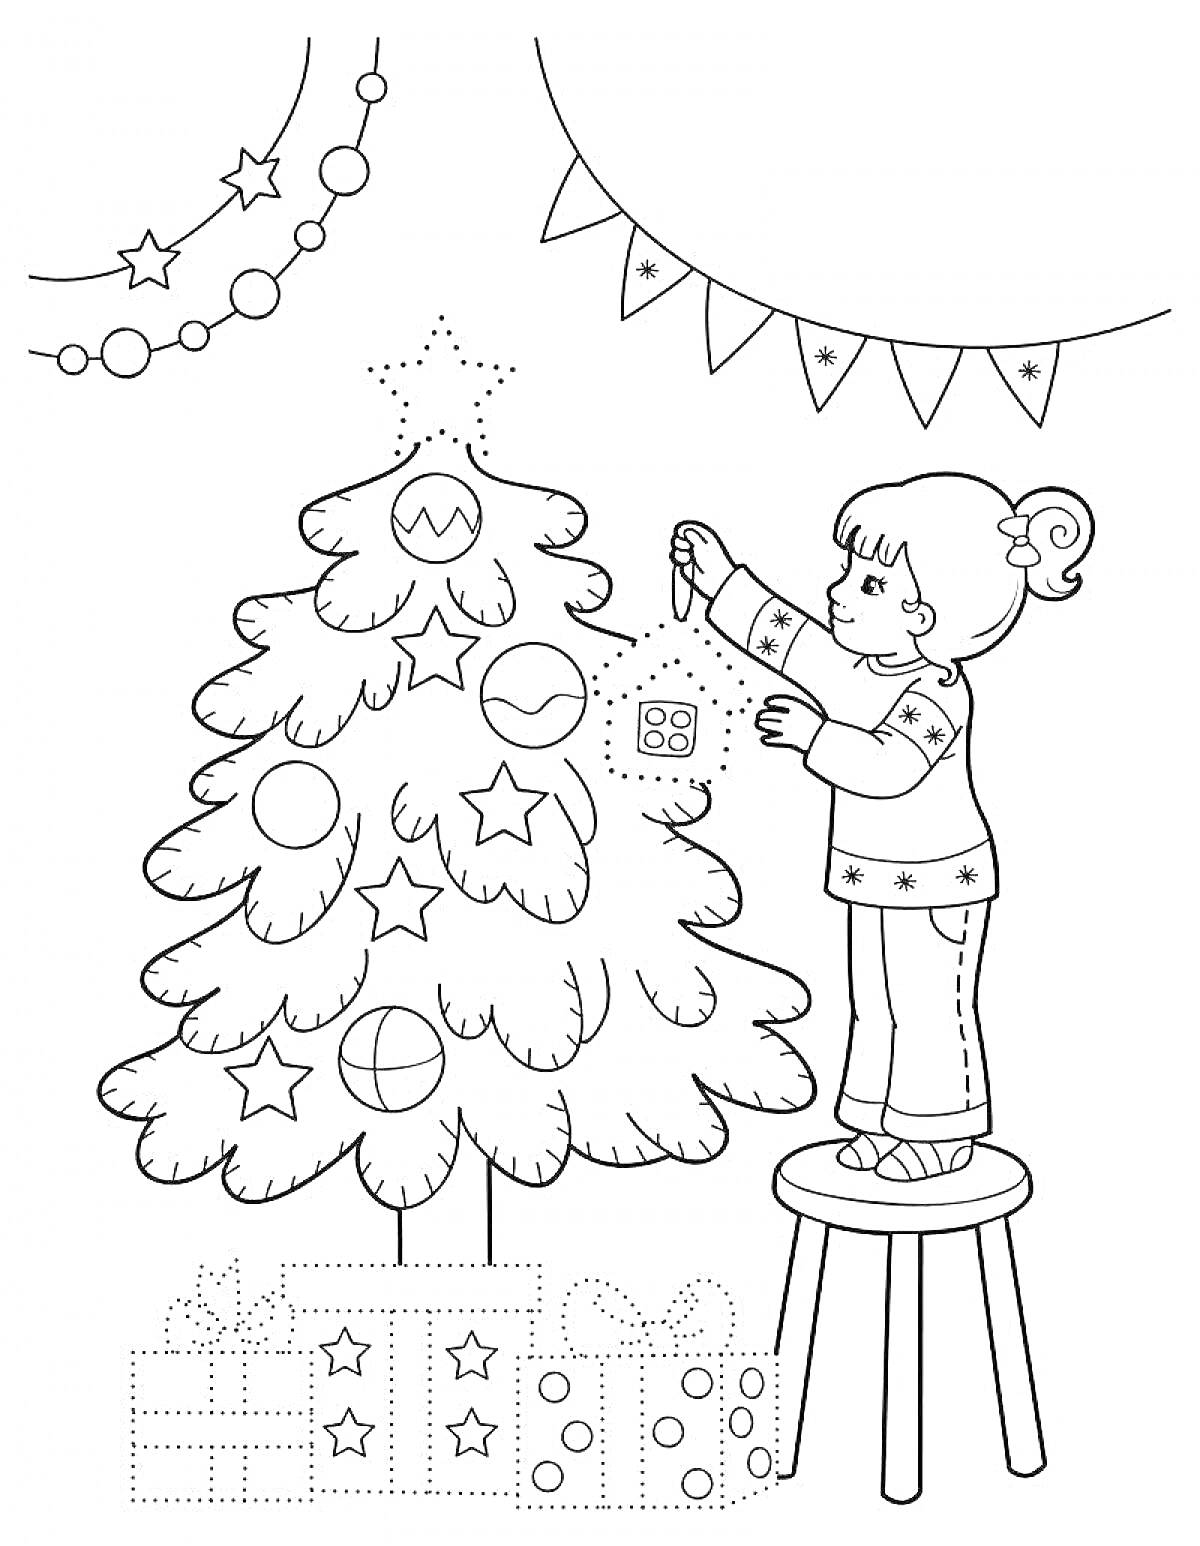 Раскраска Украшение елки ребенком: девочка на табуретке украшает новогоднюю елку, игрушки, звезда на вершине елки, подарки под елкой, гирлянда и флажки